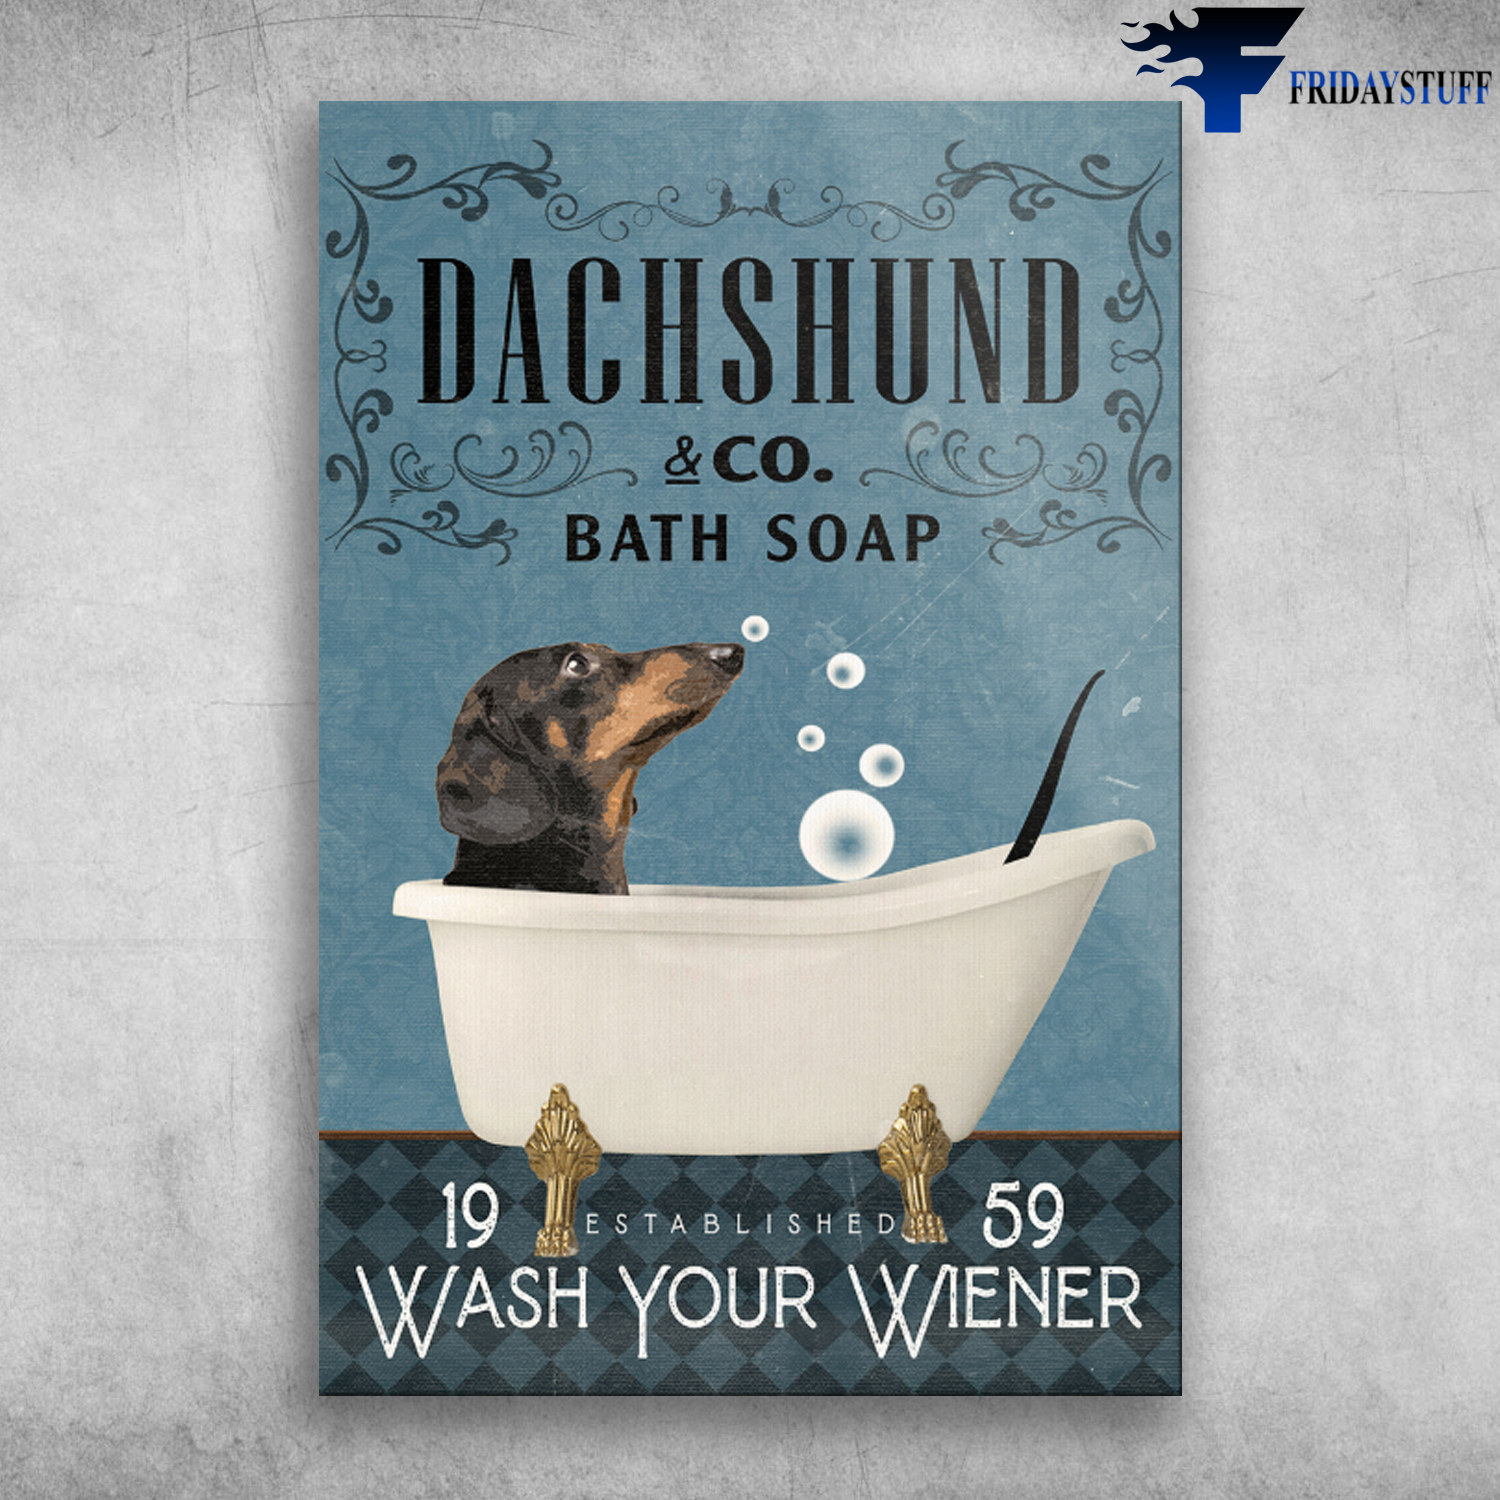 Dachshund In Bathtub Bath Soap Established Wash Your Wiener